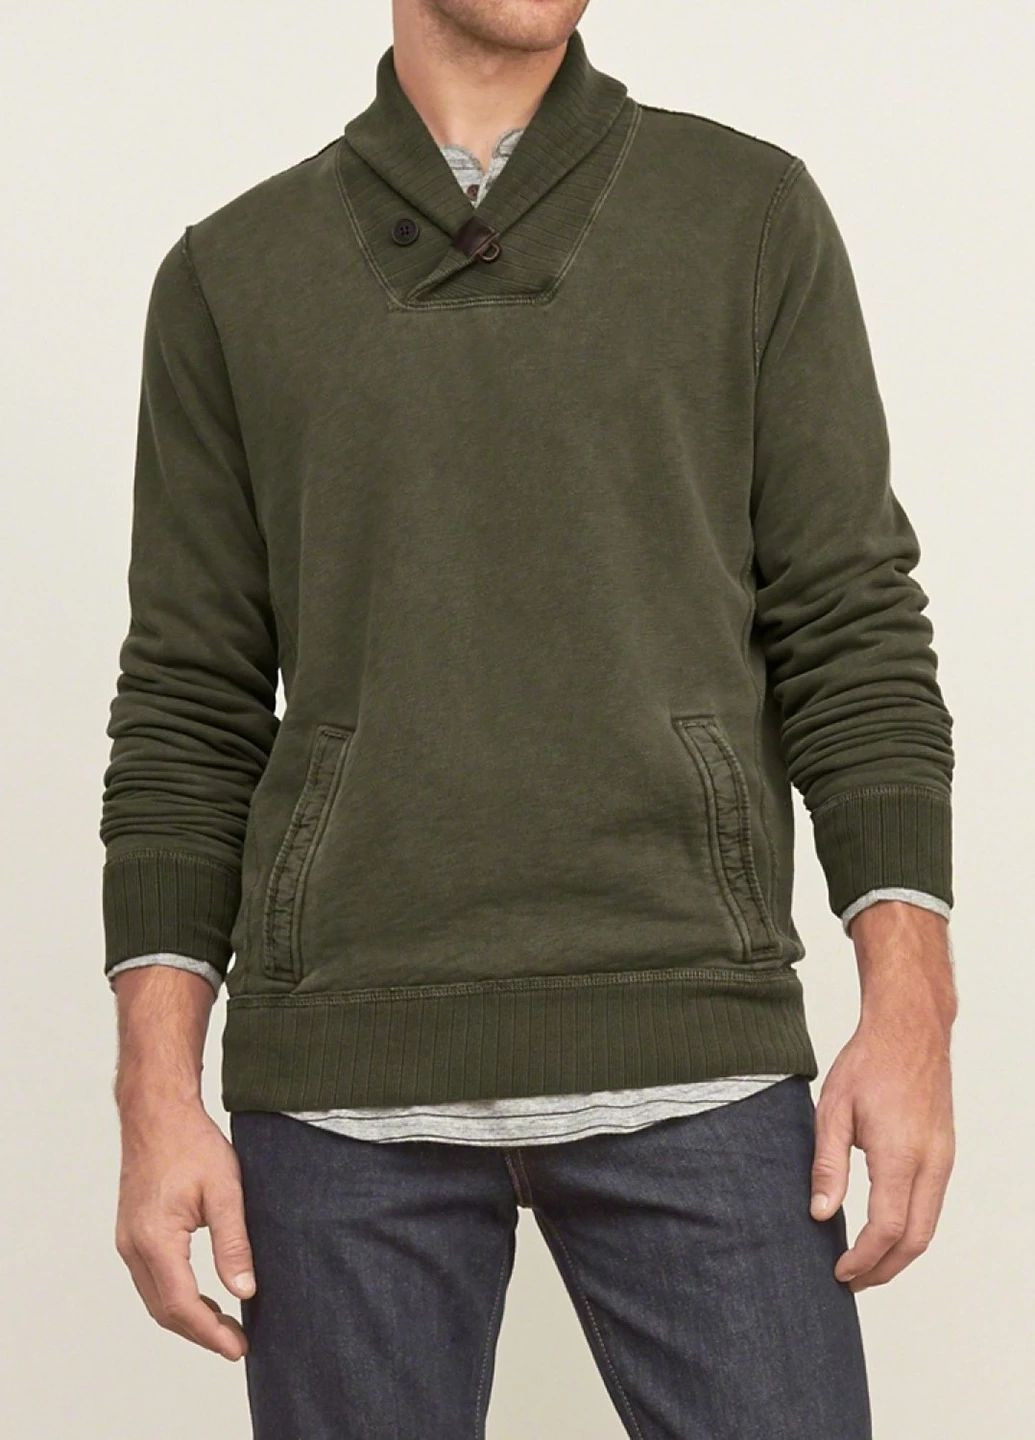 Оливковый демисезонный свитер мужской - свитер af2292m Abercrombie & Fitch